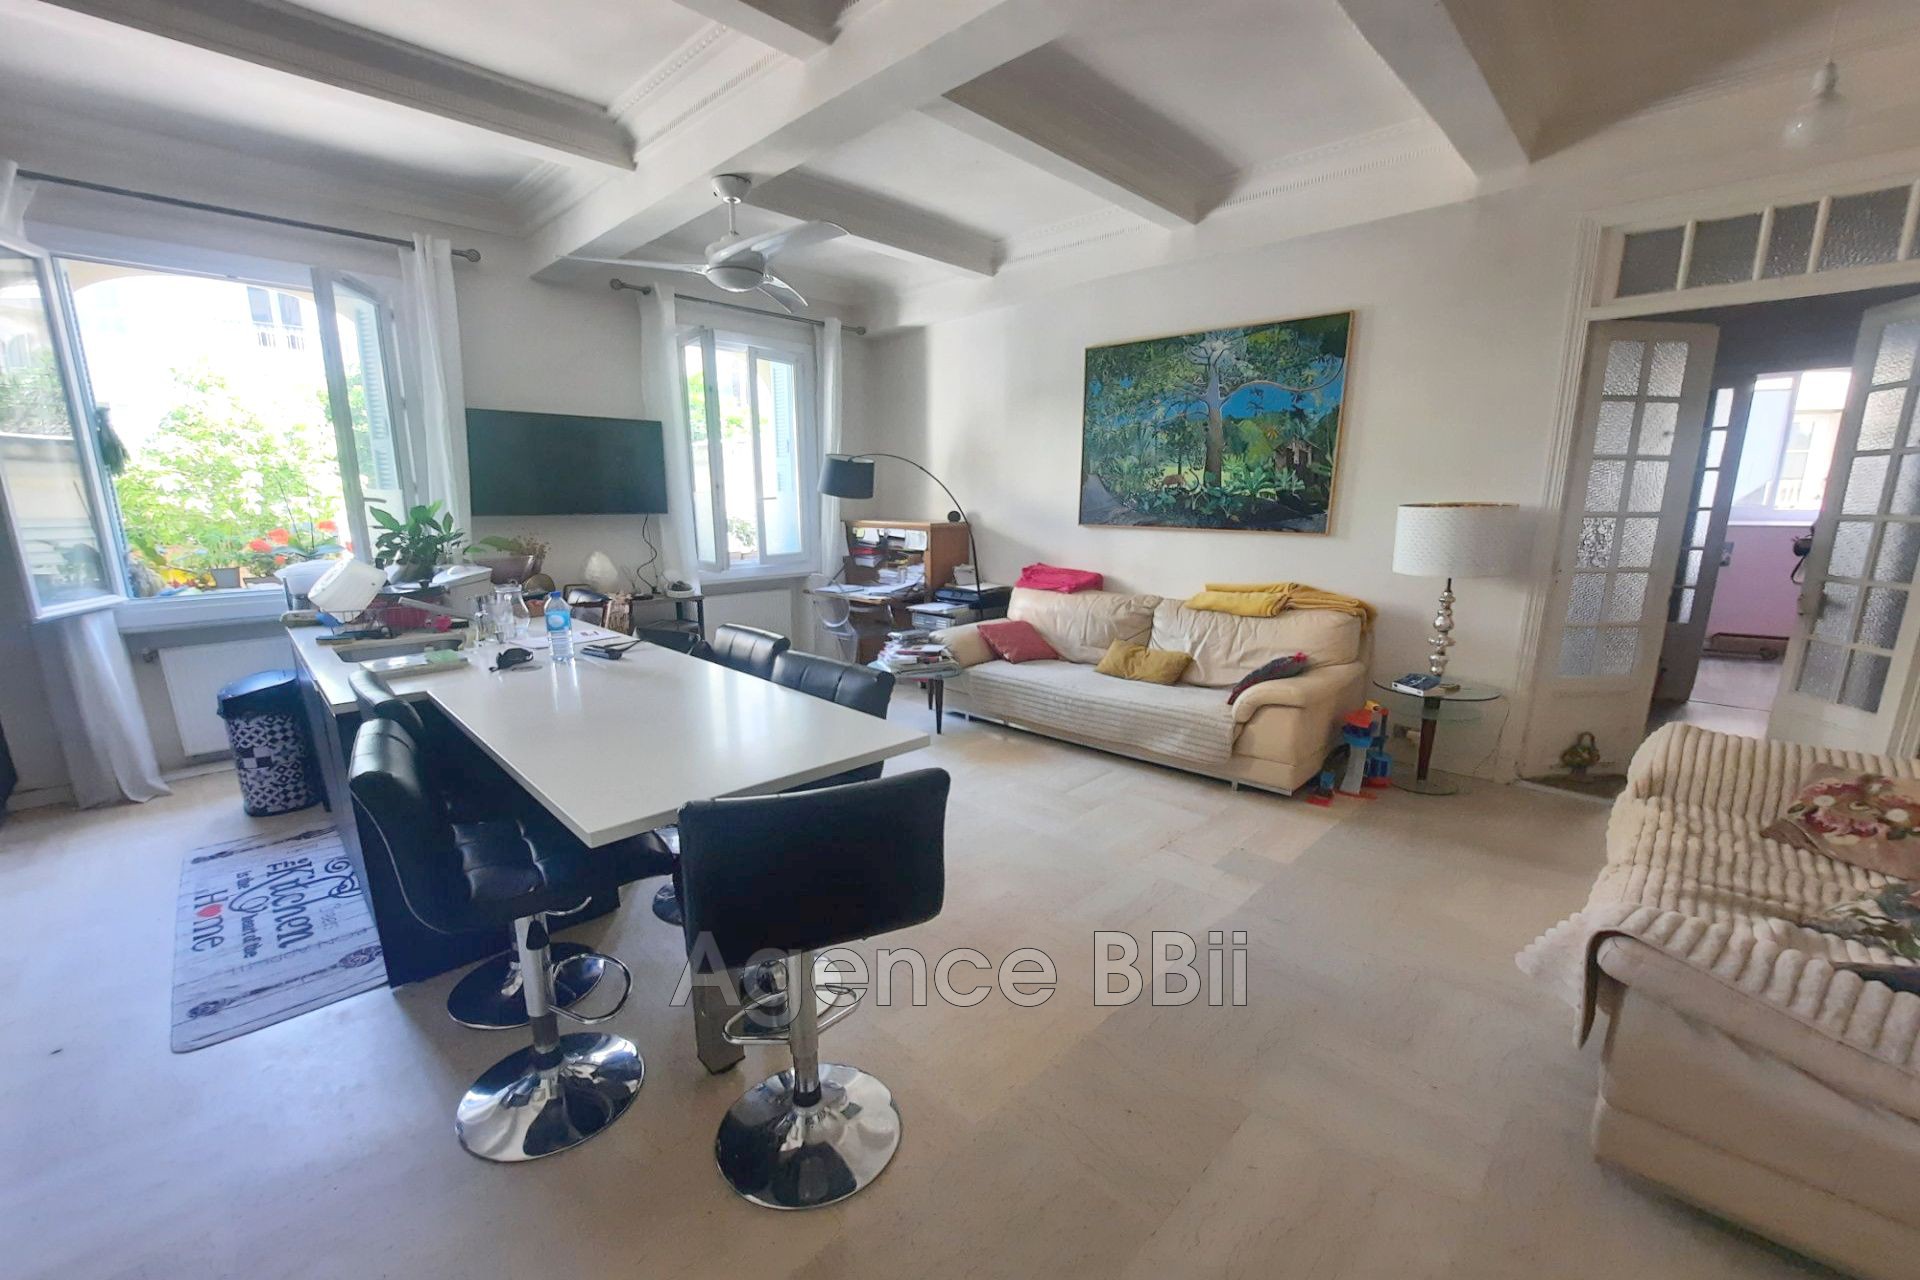 Vente Appartement 112m² à Nice (06200) - BBII